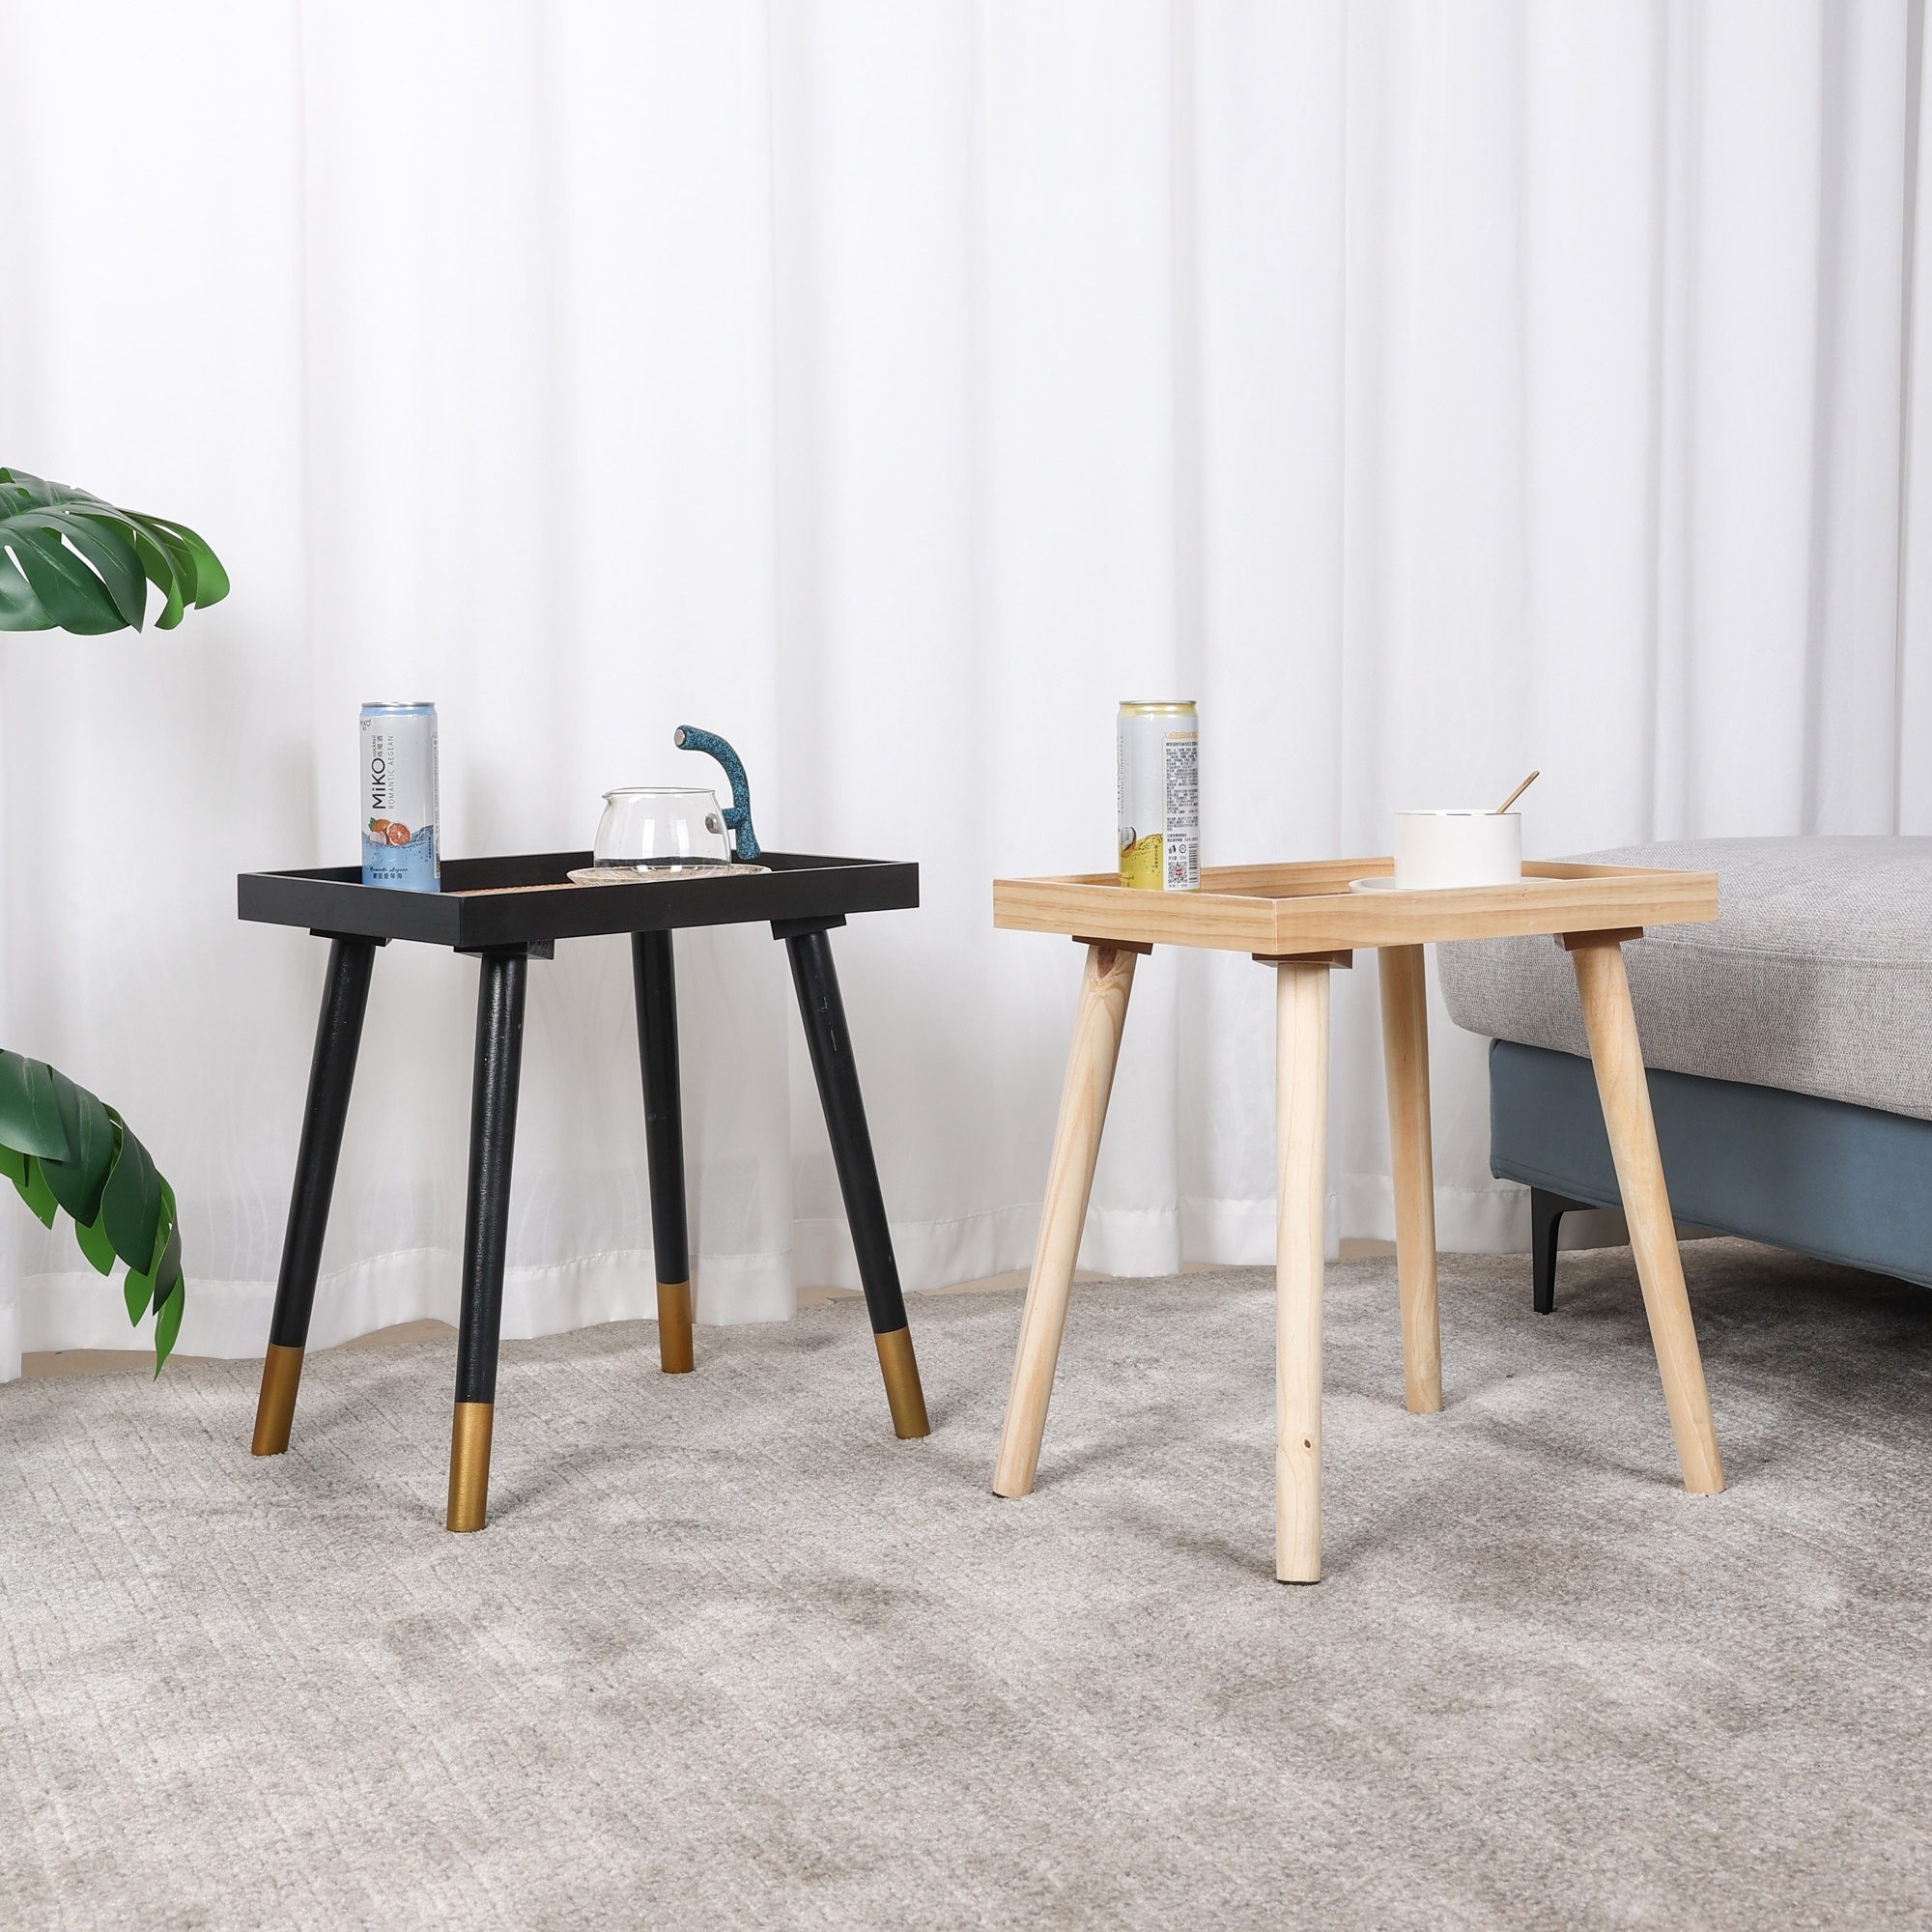  La mejor mesa auxiliar Mesa auxiliar Mesas auxiliares de madera  simples modernas adecuadas para el hogar Sala de estar Hotel Sofá Mesa  auxiliar pequeña Muebles de moda : Hogar y Cocina